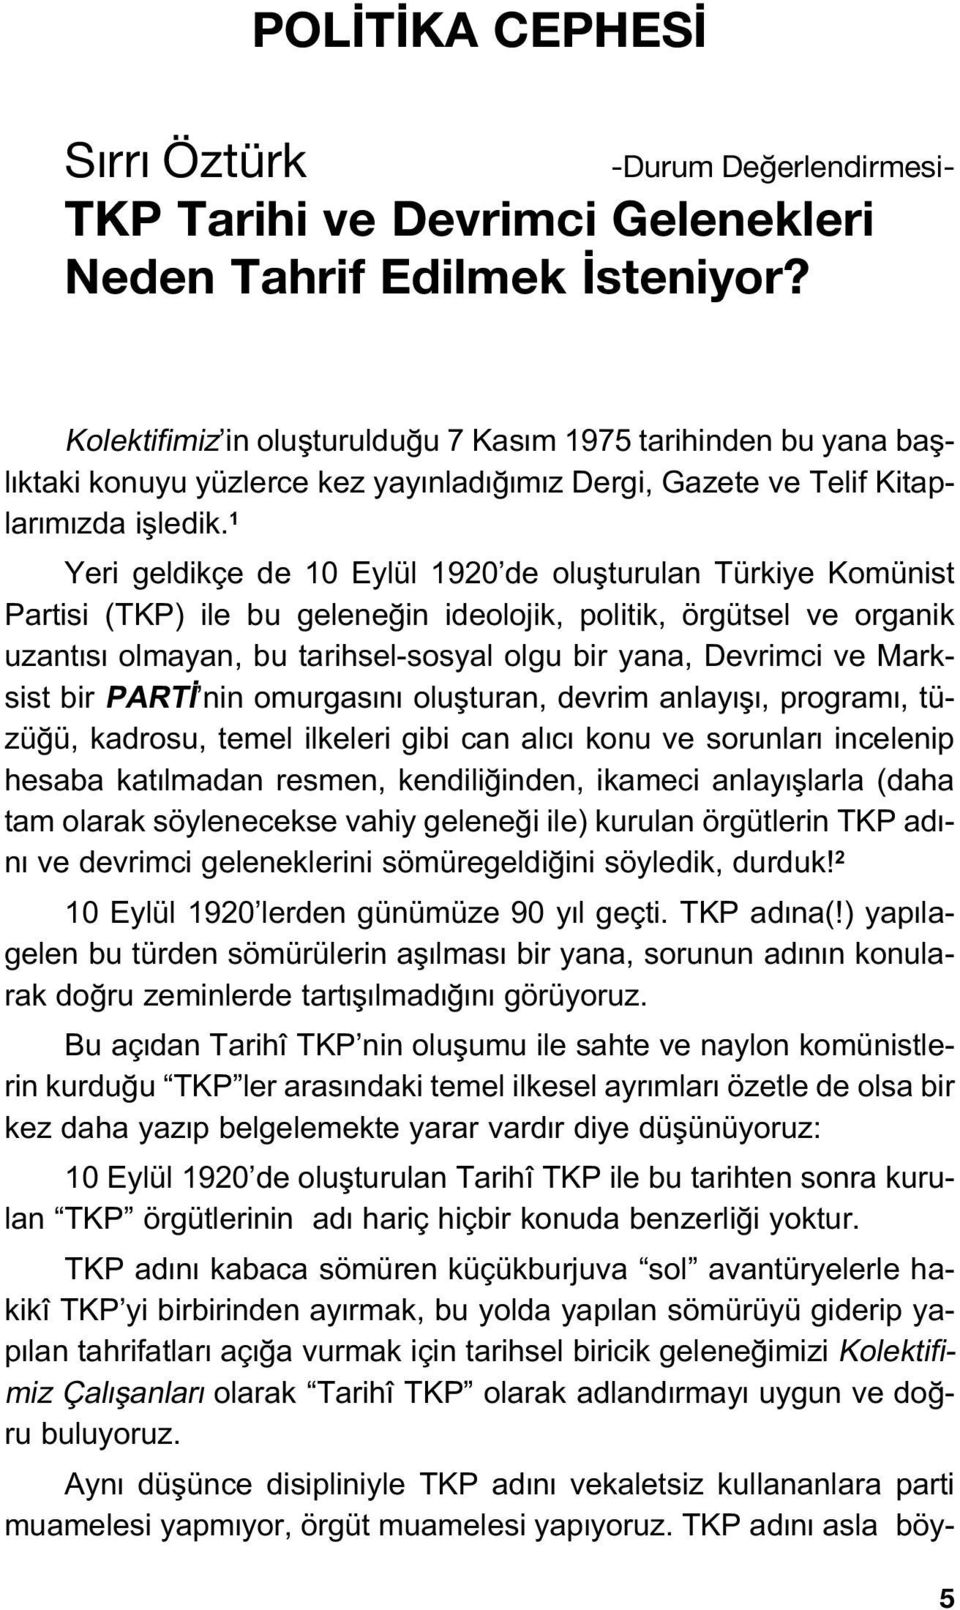 1 Yeri geldikçe de 10 Eylül 1920 de oluflturulan Türkiye Komünist Partisi (TKP) ile bu gelene in ideolojik, politik, örgütsel ve organik uzant s olmayan, bu tarihsel-sosyal olgu bir yana, Devrimci ve